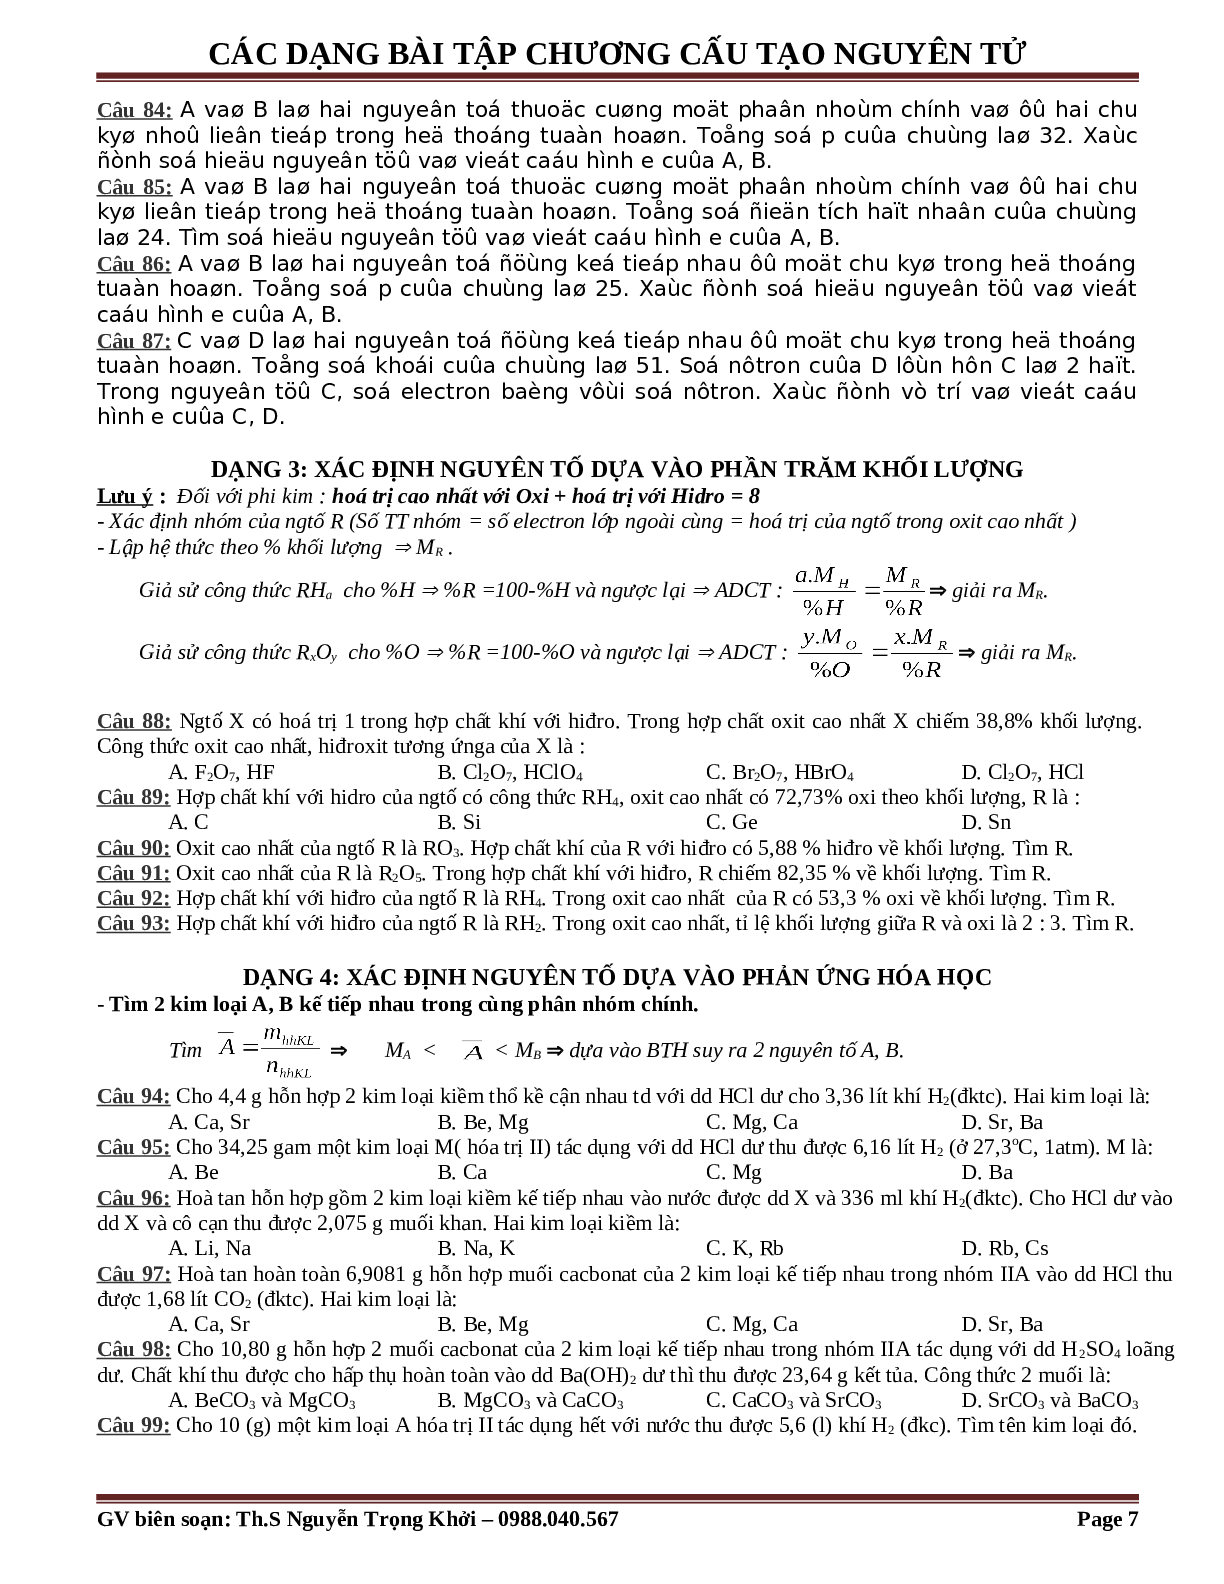 Bài tập về cấu tạo nguyên tử cơ bản, nâng cao (trang 7)